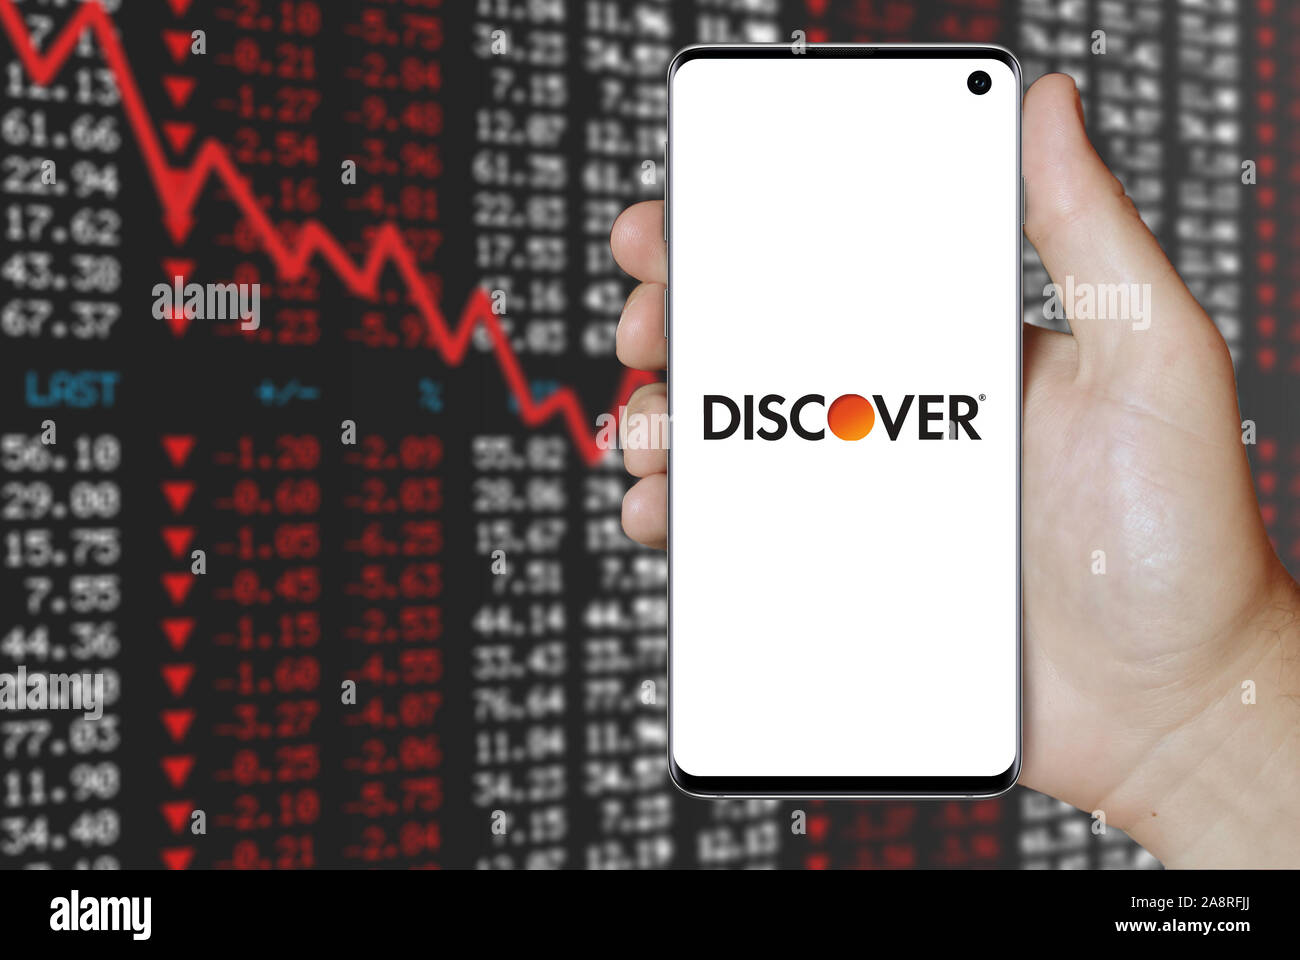 Logo der öffentlichen Unternehmen Discover Financial Services angezeigt auf einem Smartphone. Negative Börse Hintergrund. Credit: PIXDUCE Stockfoto